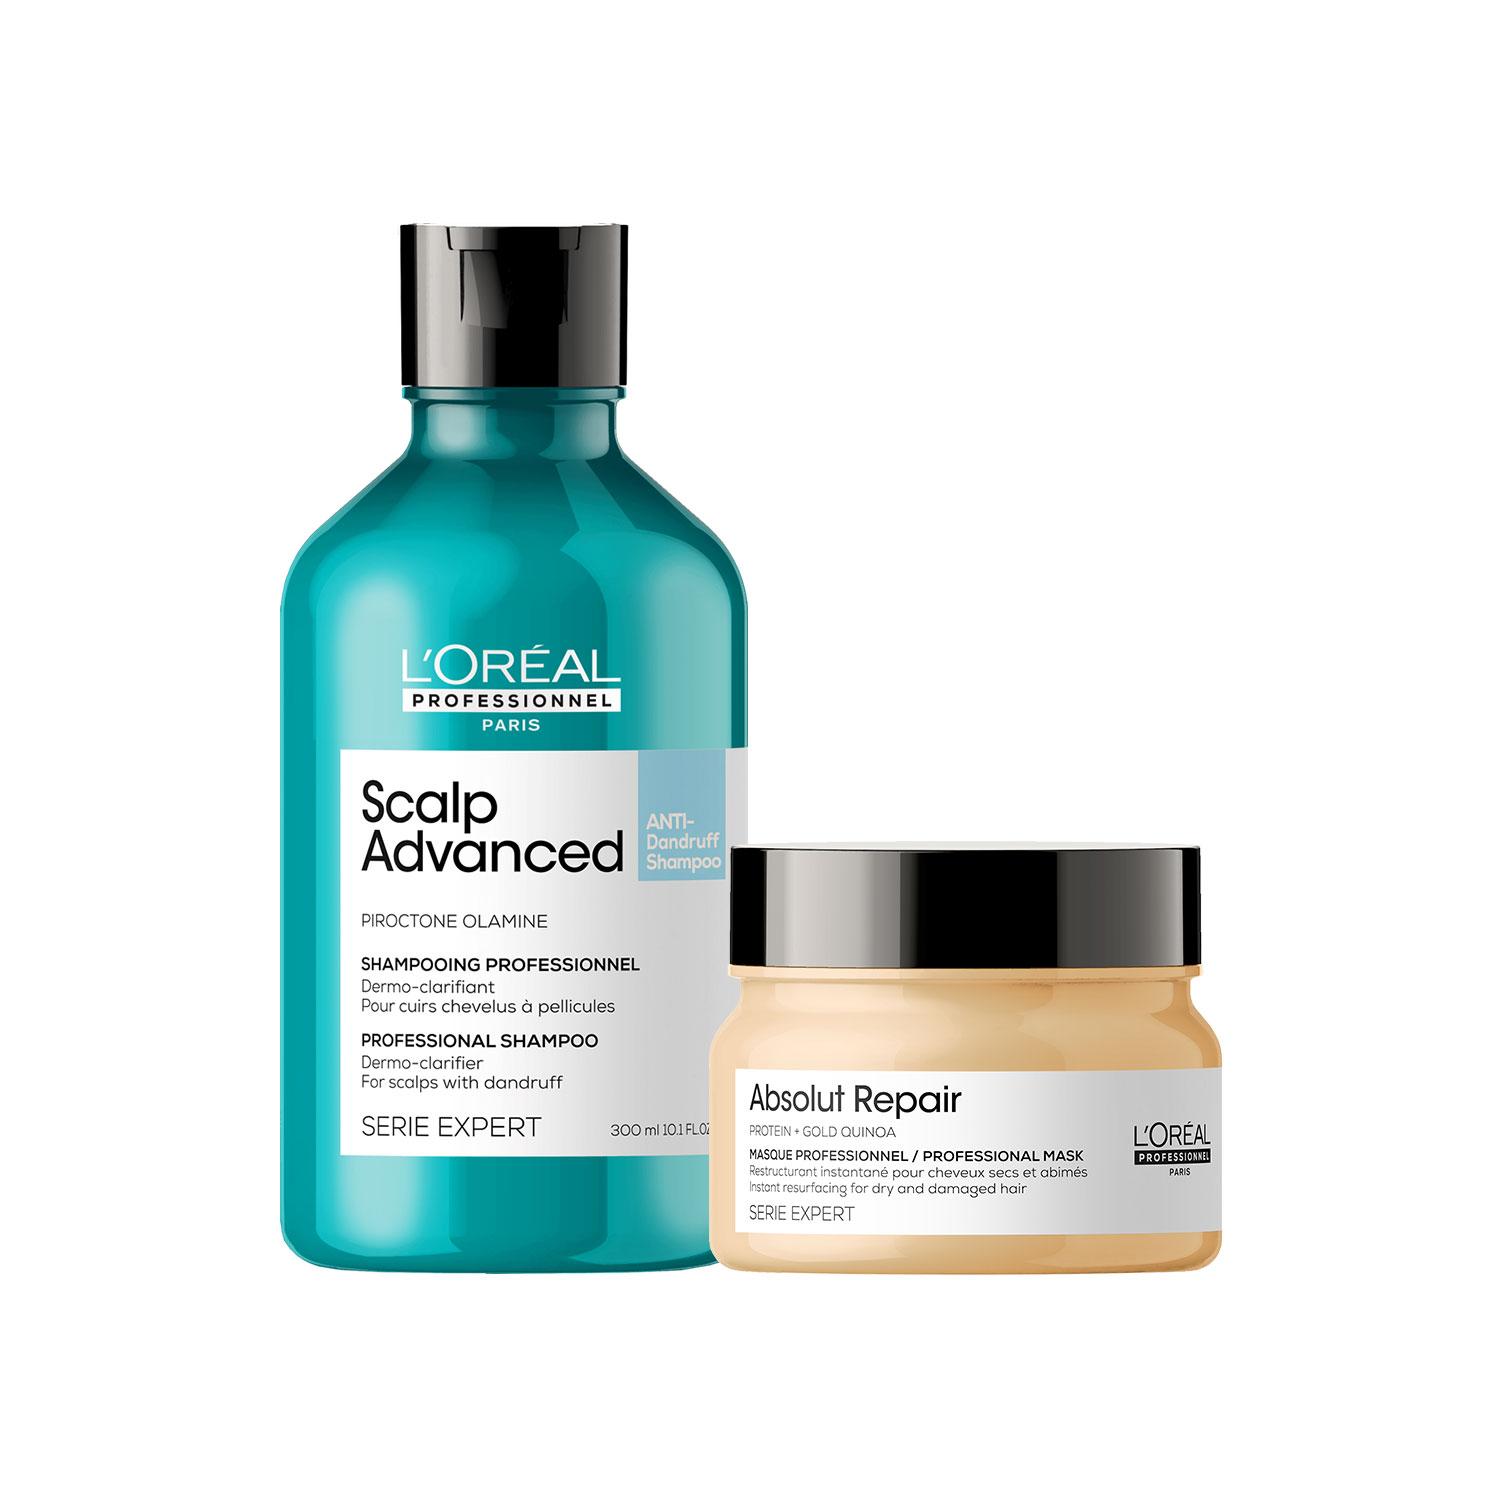 L'Oreal Professionnel | L'Oreal Professionnel Scalp Advanced Anti-Dandruff Shampoo 300ml & Absolut Repair Hair Mask 250ml